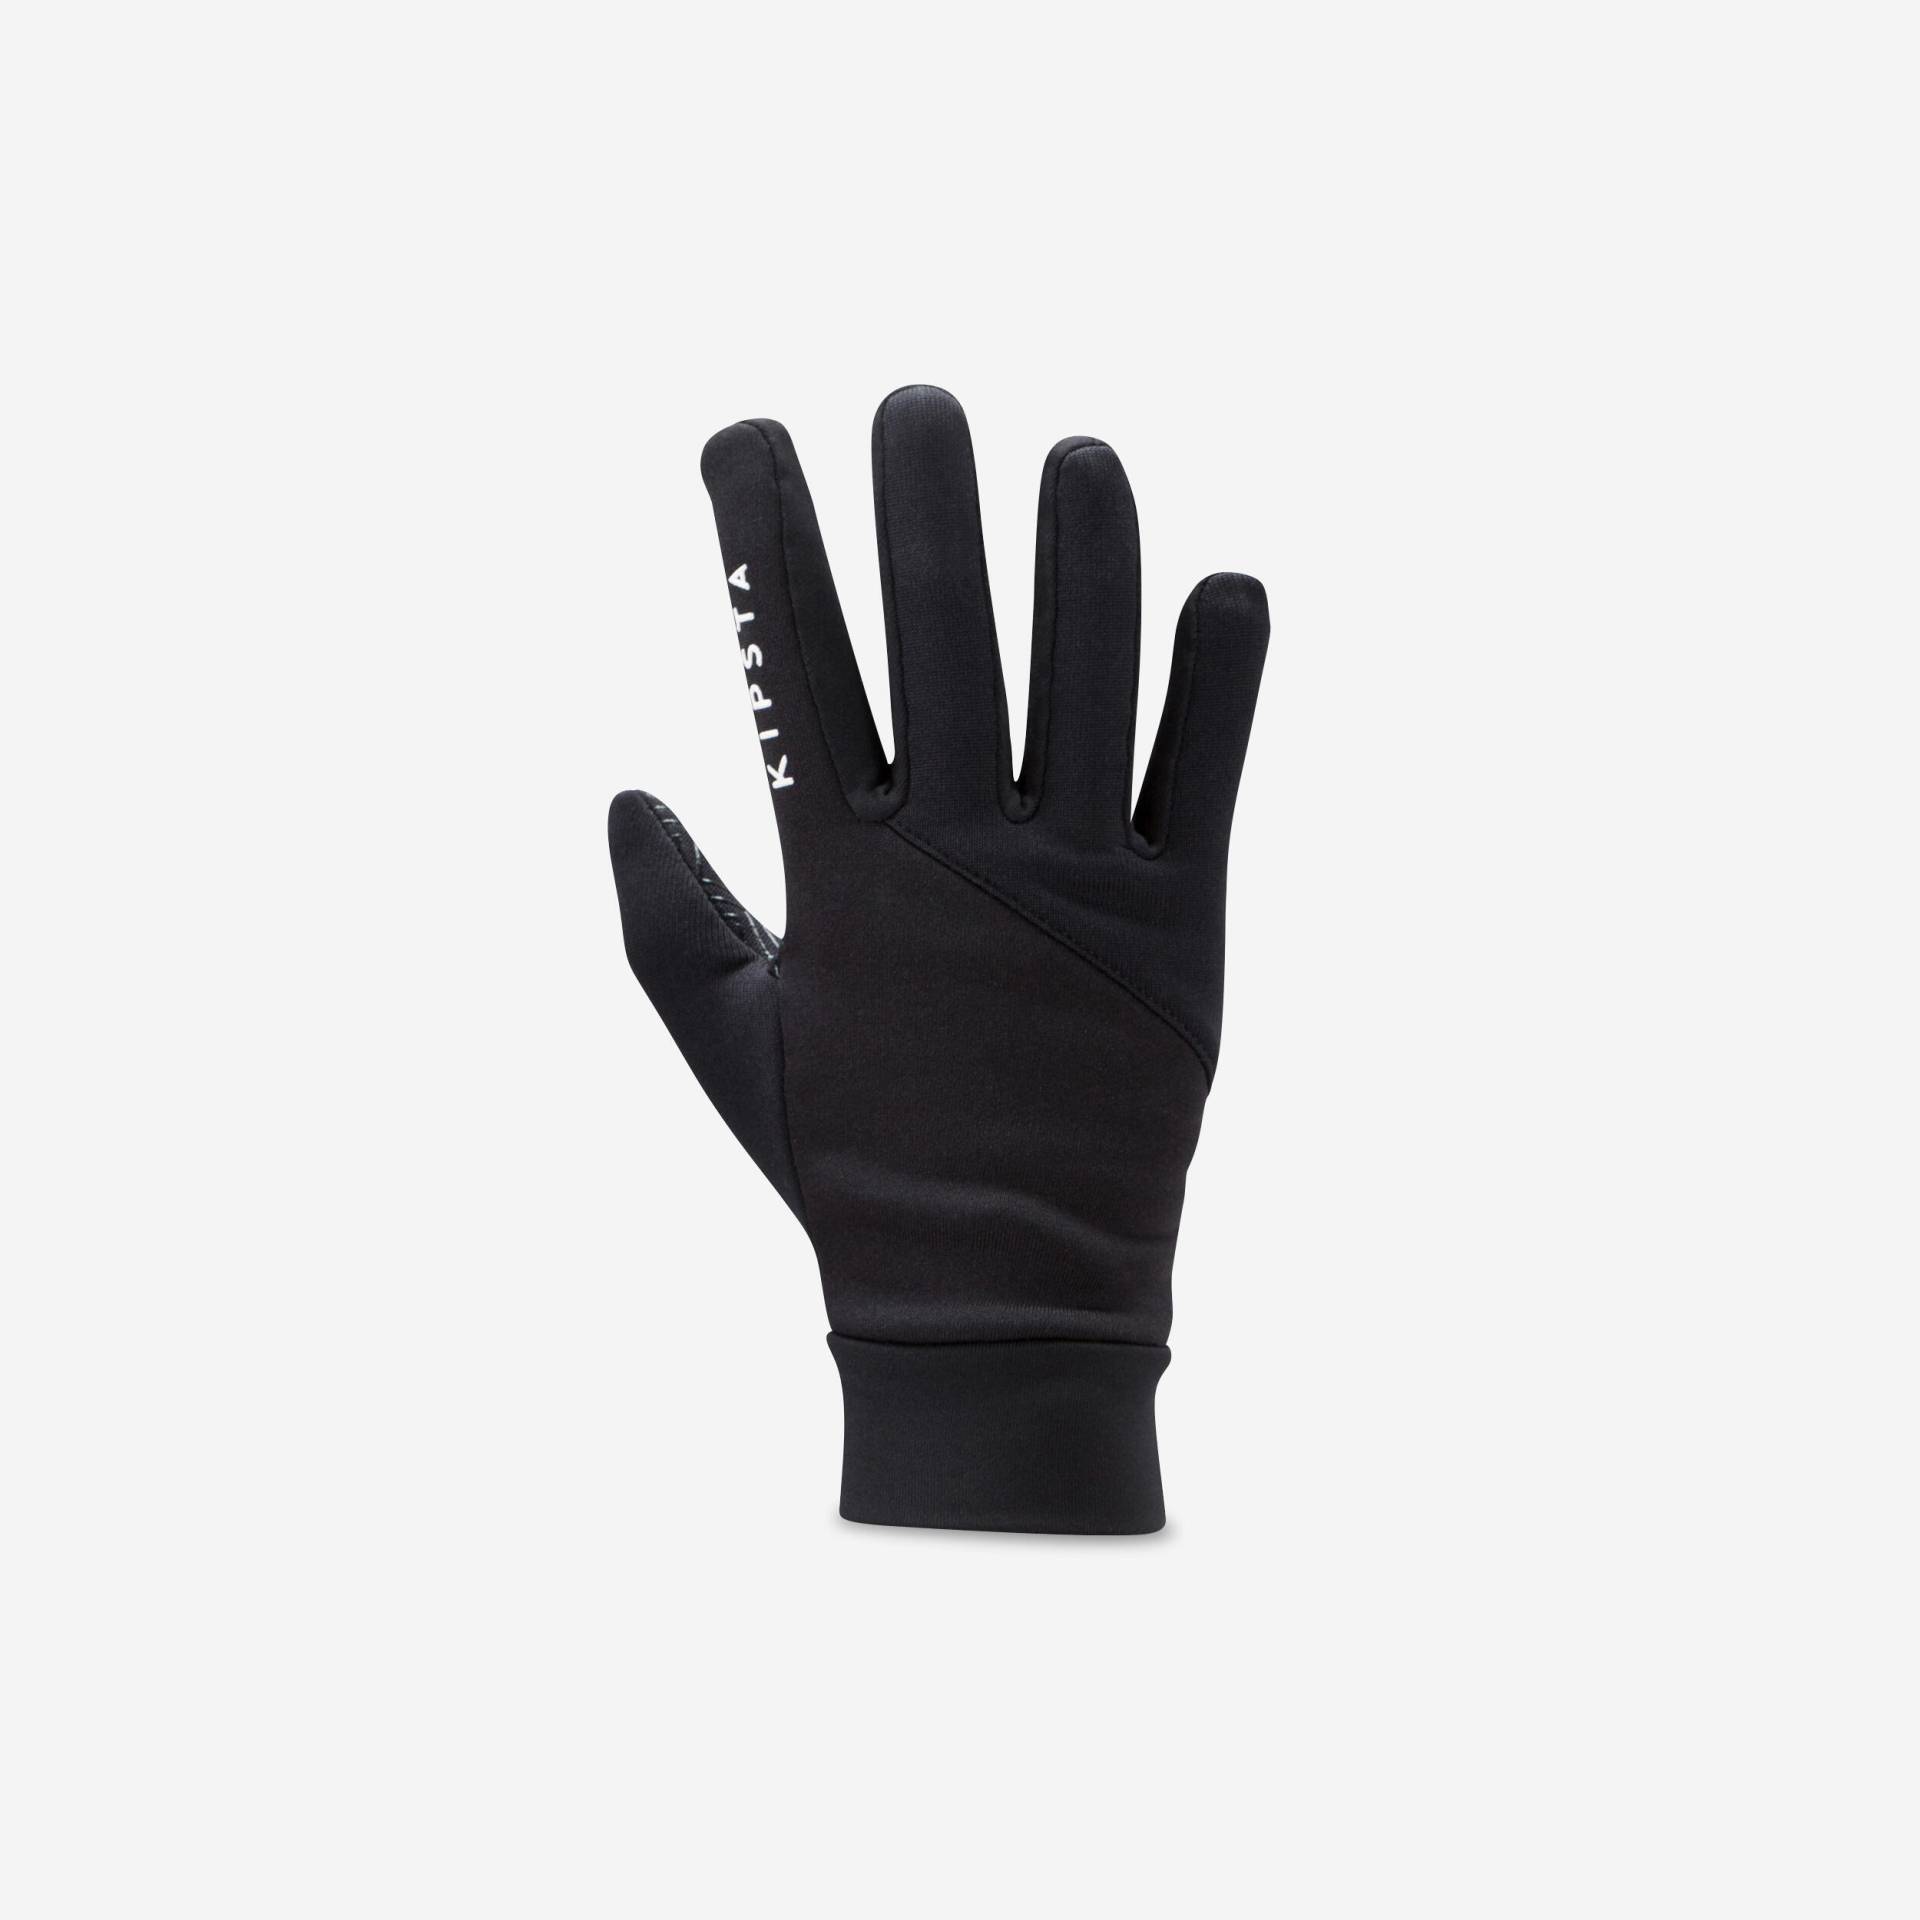 Kinder Fussball Handschuhe - Keepdry 500 schwarz von KIPSTA